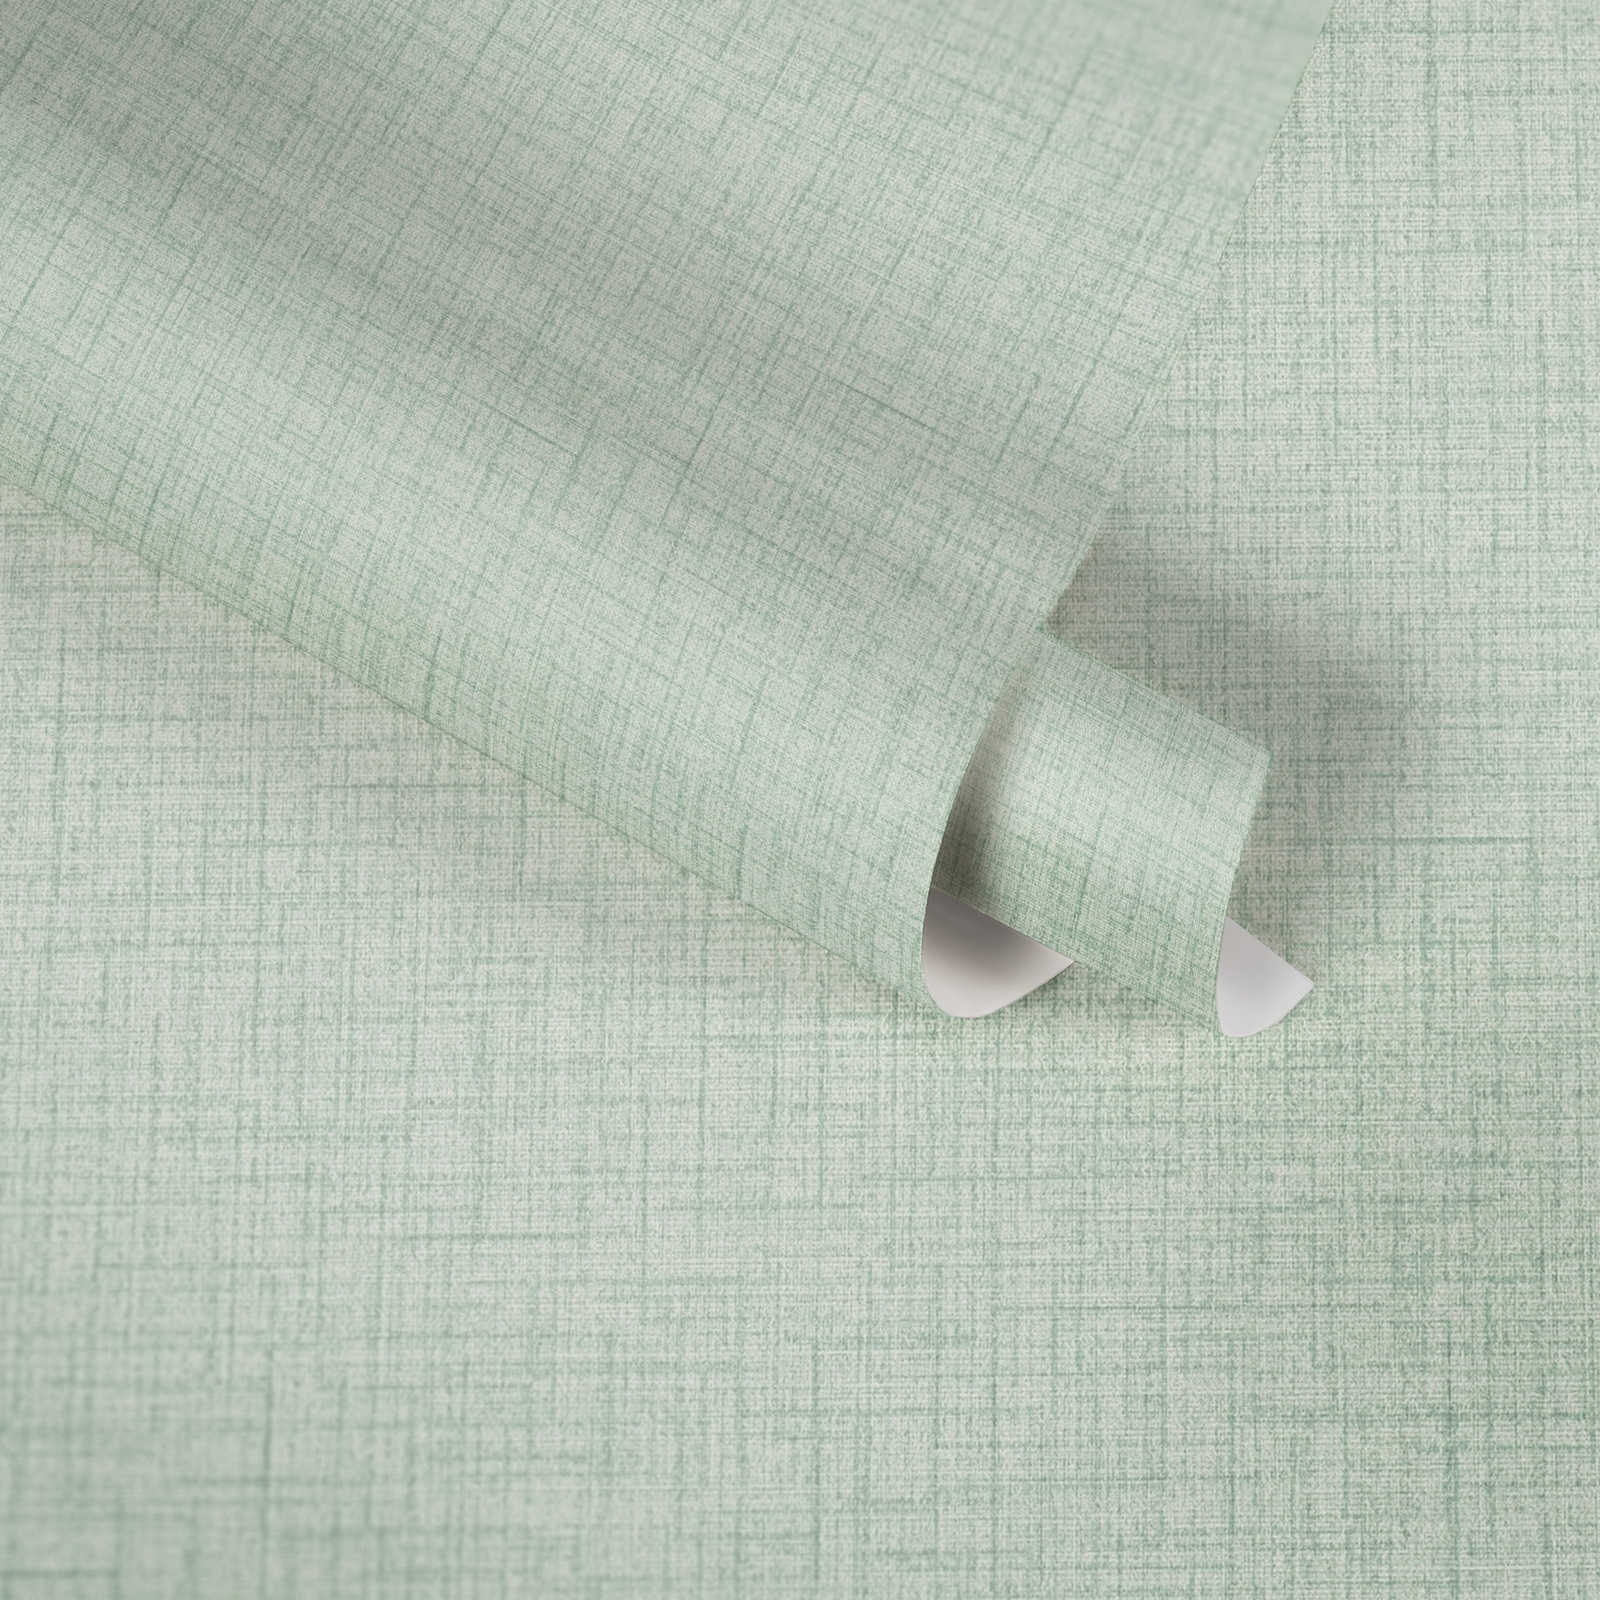             Mint green wallpaper with textile linen texture - green
        